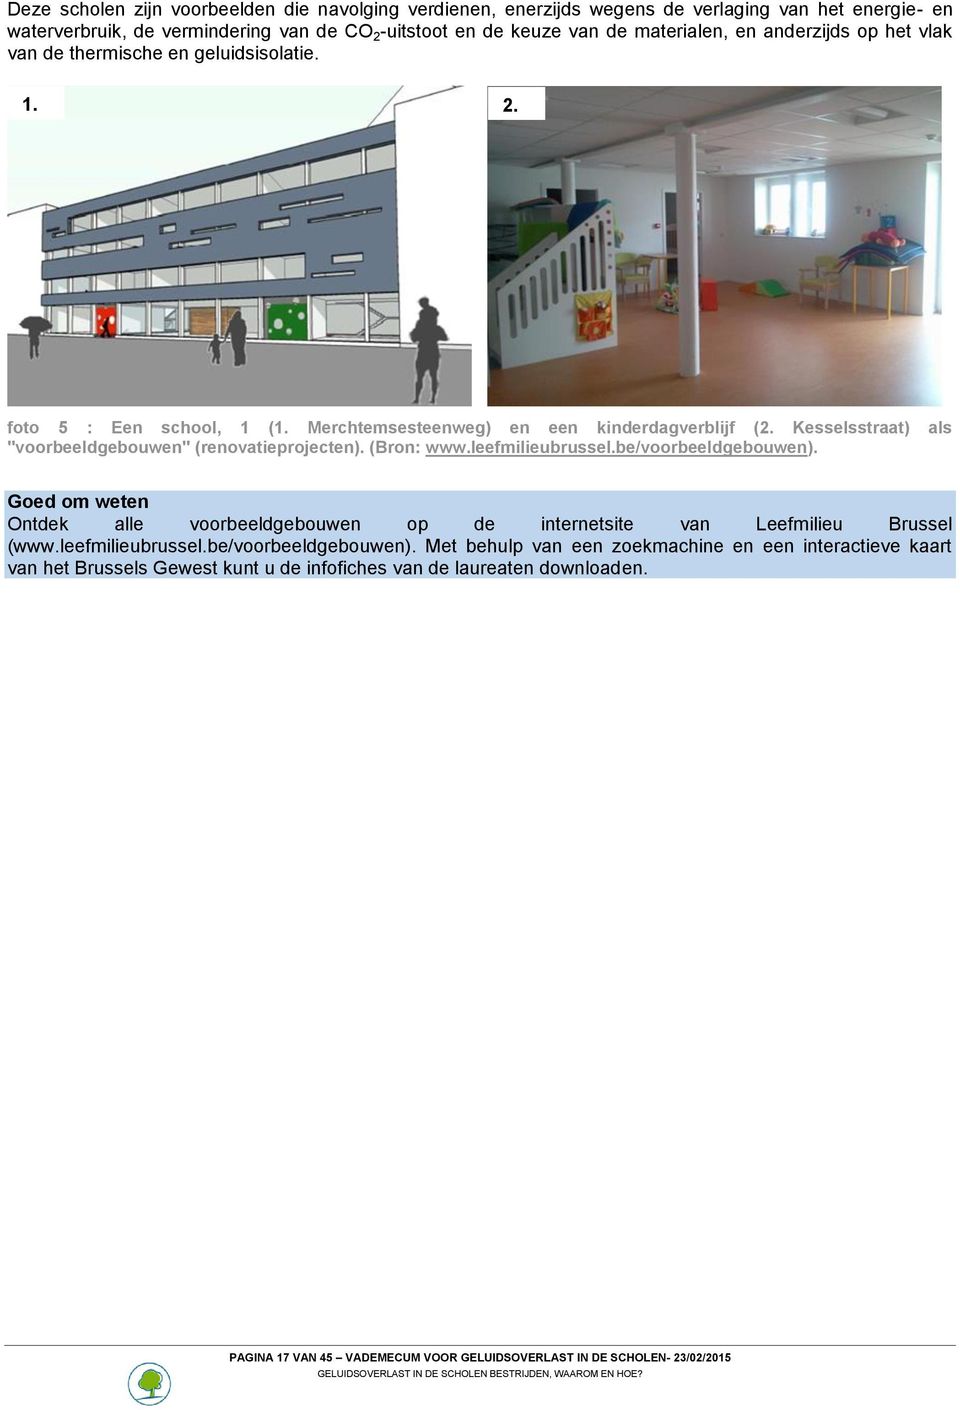 Kesselsstraat) als "voorbeeldgebouwen" (renovatieprojecten). (Bron: www.leefmilieubrussel.be/voorbeeldgebouwen).